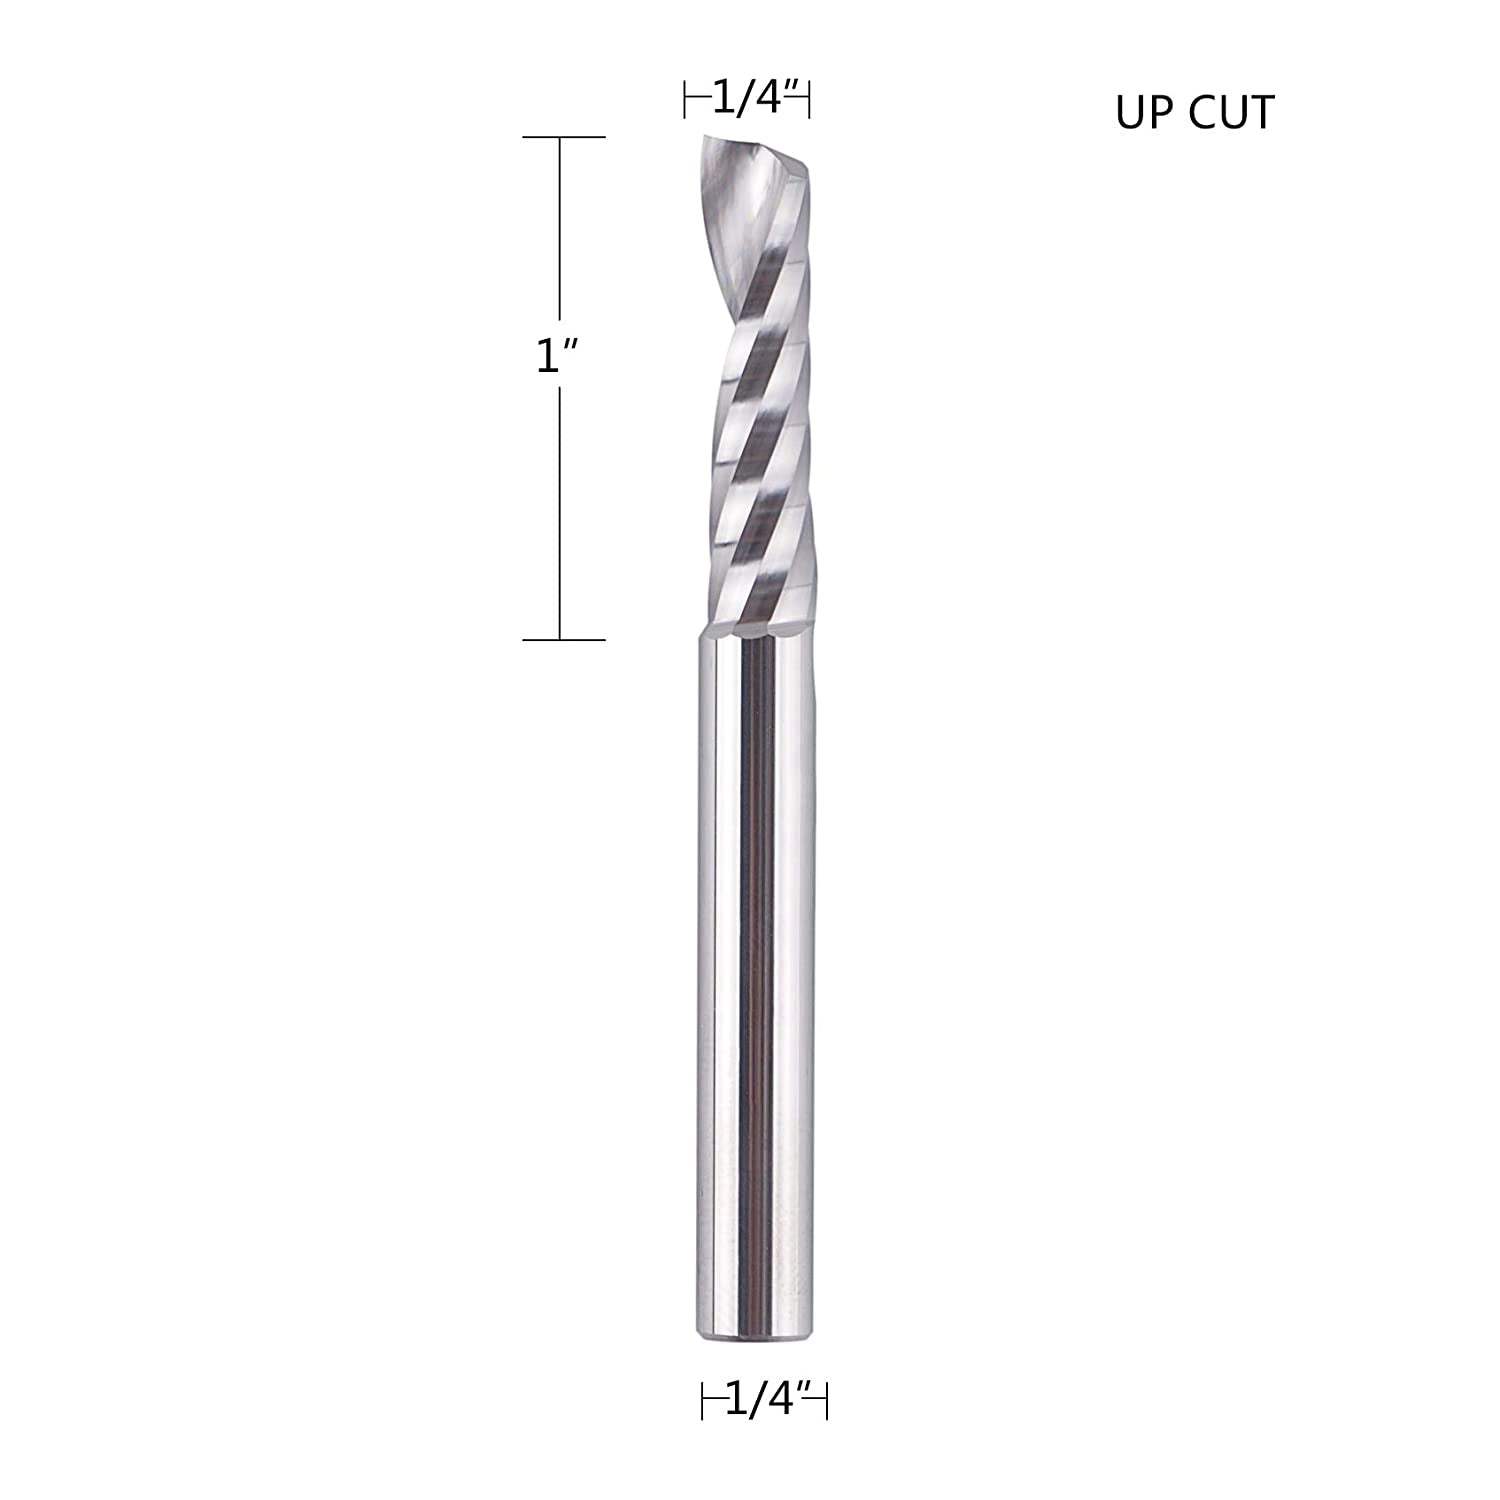 SpeTool CNC SC Spiral O Flute Plastic Cutting 1/4" Diam UpCut Router Bit